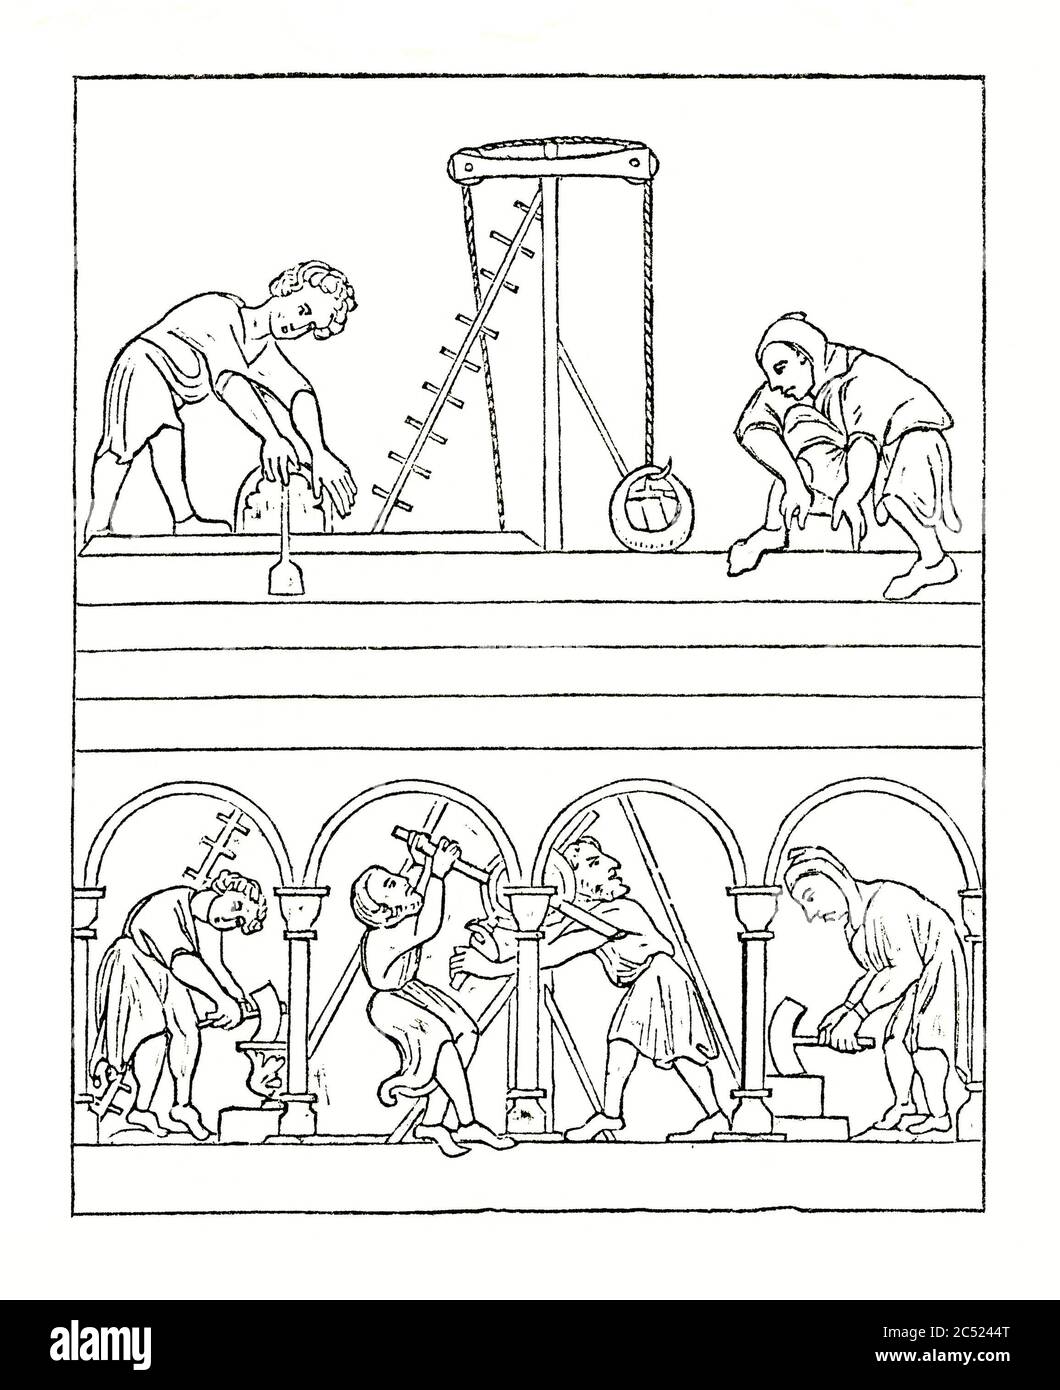 Eine alte Gravur zeigt die Bautechniken im Mittelalter. Dazu gehören Männer am Boden Heben Materialien wie Steine oder Steine mit einem frühen Riemenscheibe System oder "Kran". Die Leiter ist sichtbar und die Männer auf ebenem Boden meißeln und schnitzen. Die Bögen hier sind gerundet oder normannisch im Stil. Stockfoto